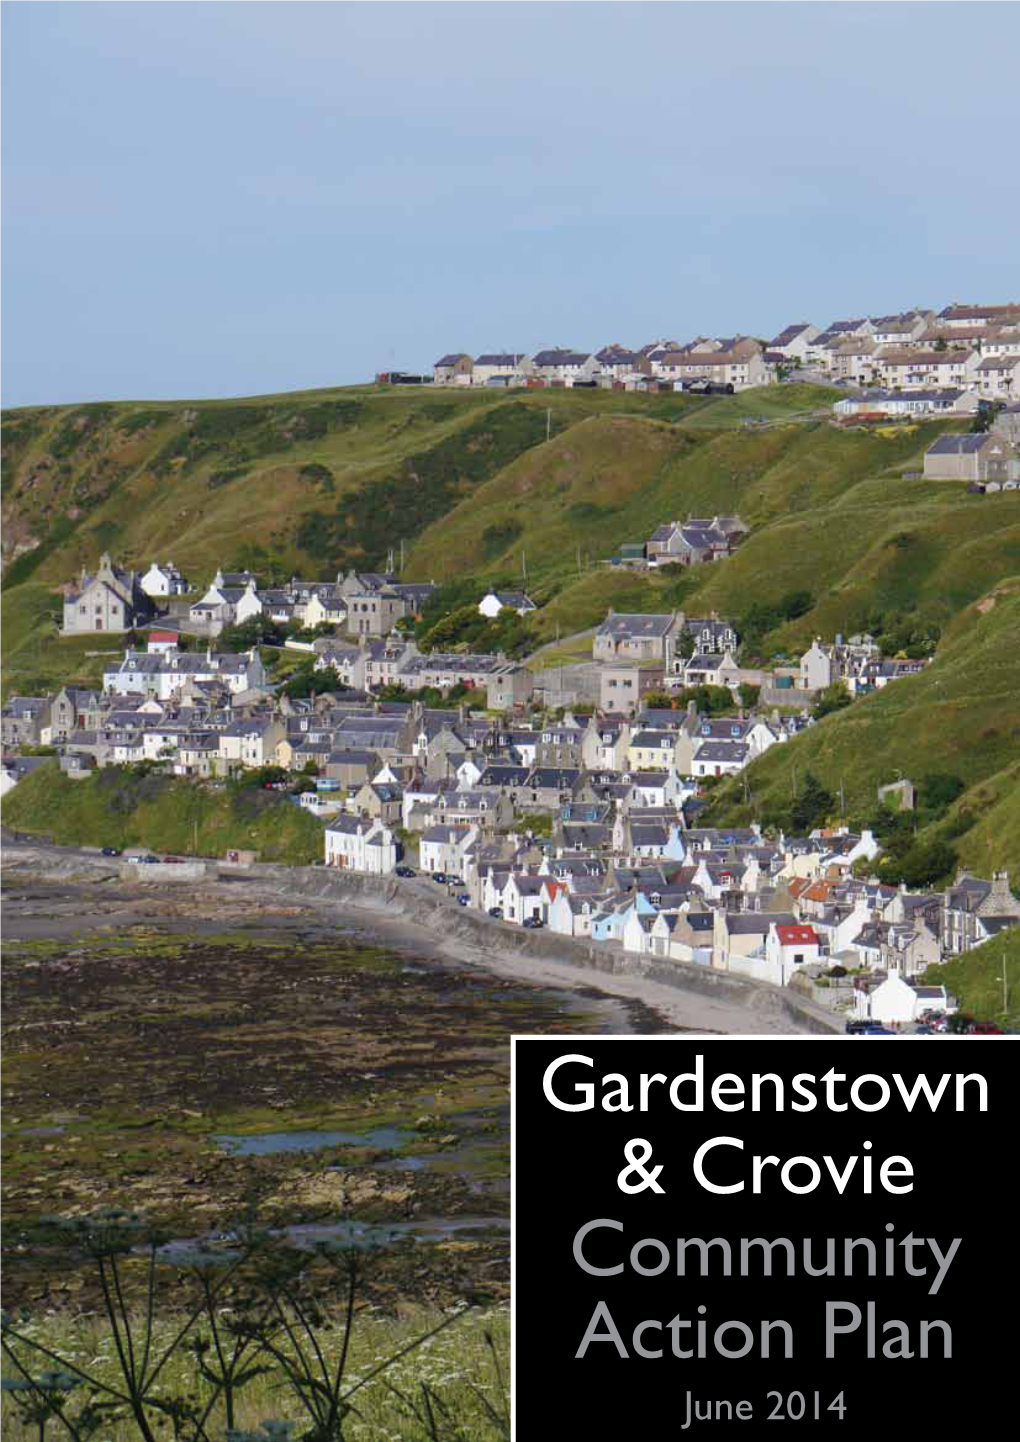 Gardenstown & Crovie Community Action Plan